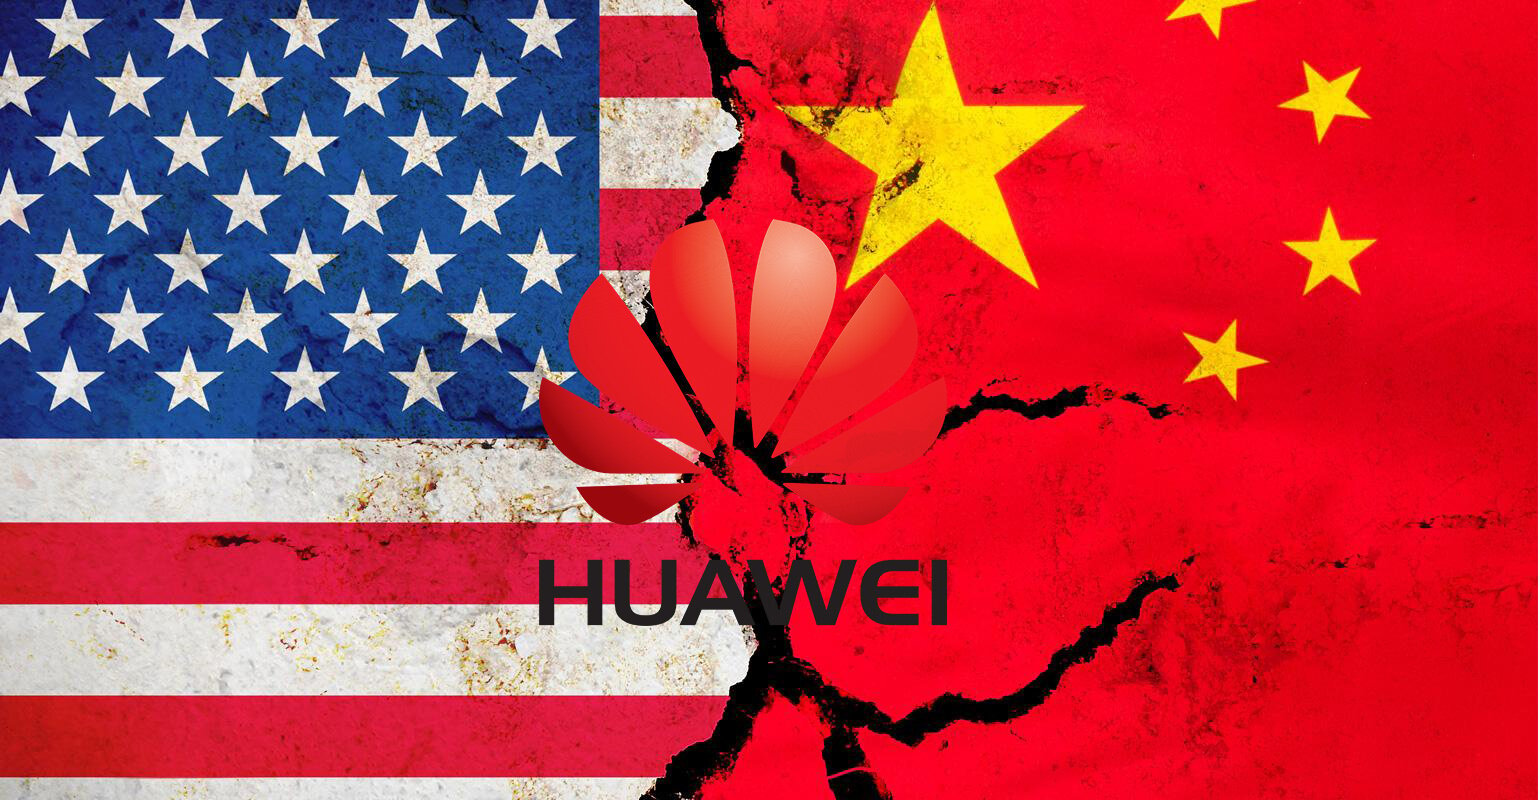 Βαρύτατες κατηγορίες για βιομηχανική κατασκοπεία και οικονομικές απάτες απήγγειλαν οι ΗΠΑ σε βάρος της Huawei